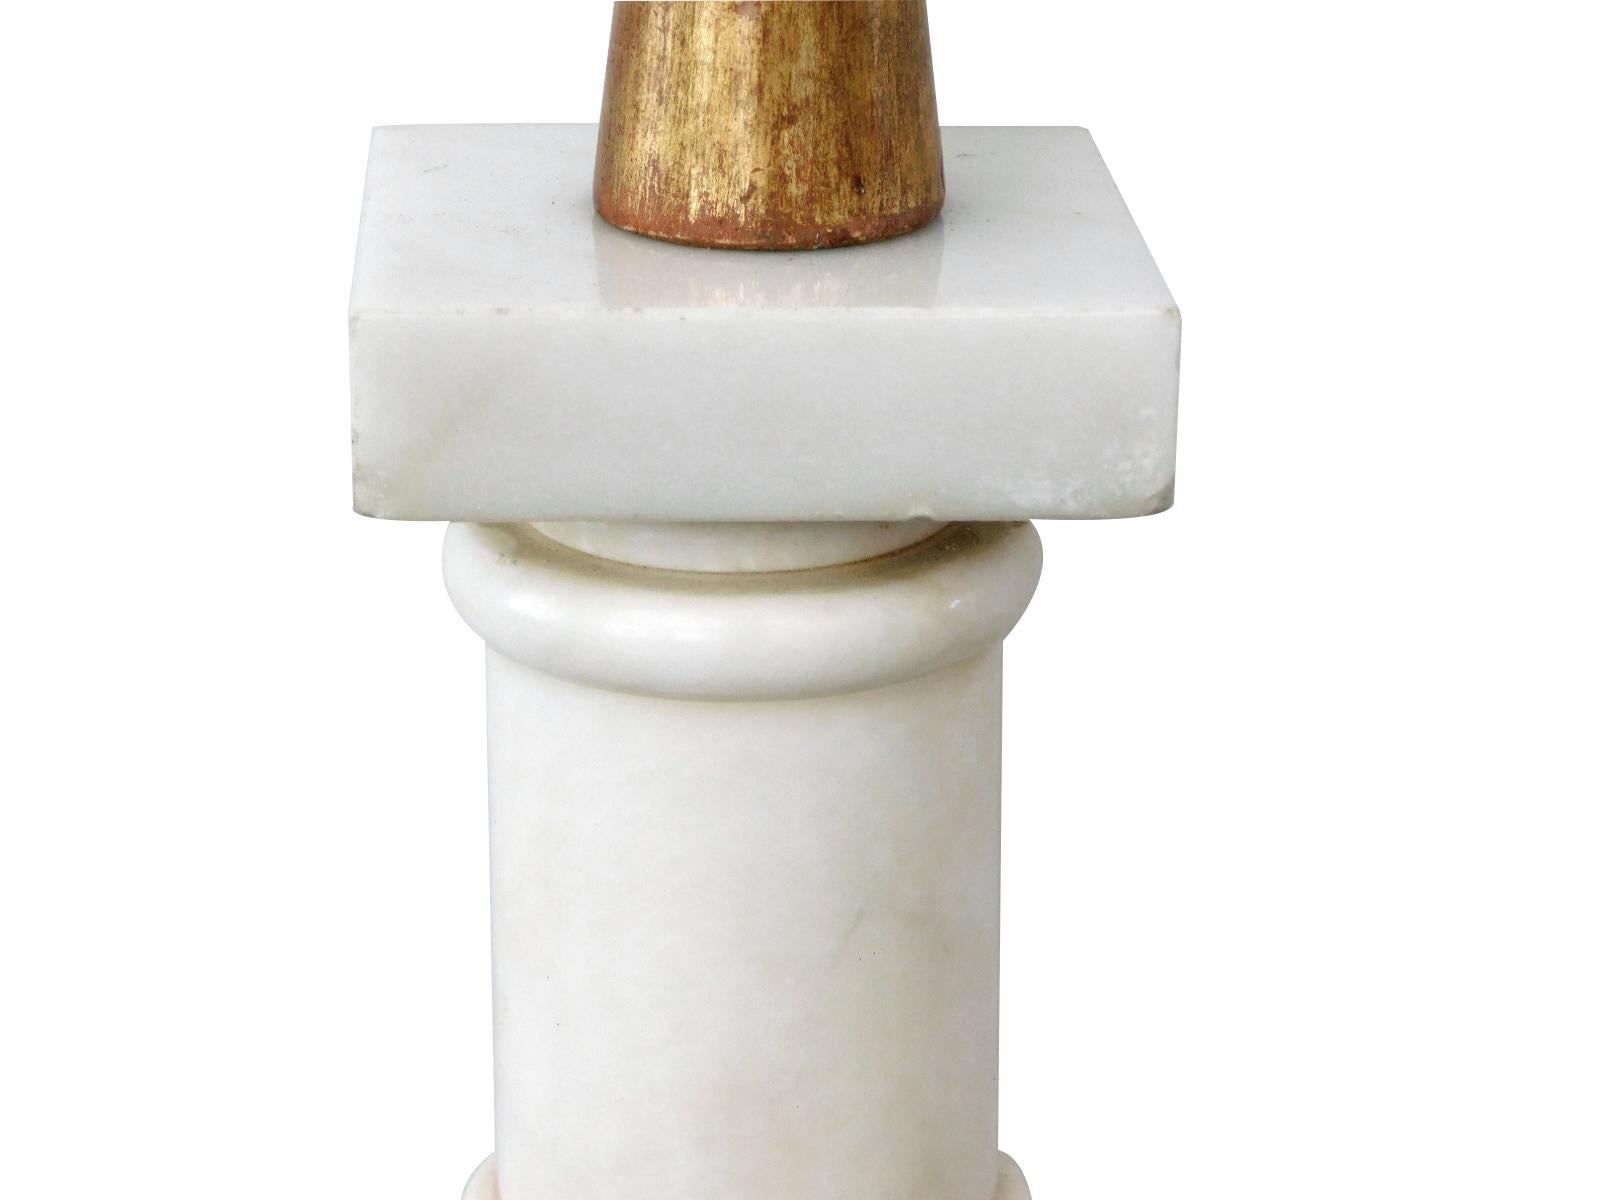 avec un col en bois doré au-dessus d'un corps de colonne tourné en marbre de Carrare joliment figuré, le tout sur une base en bois doré.